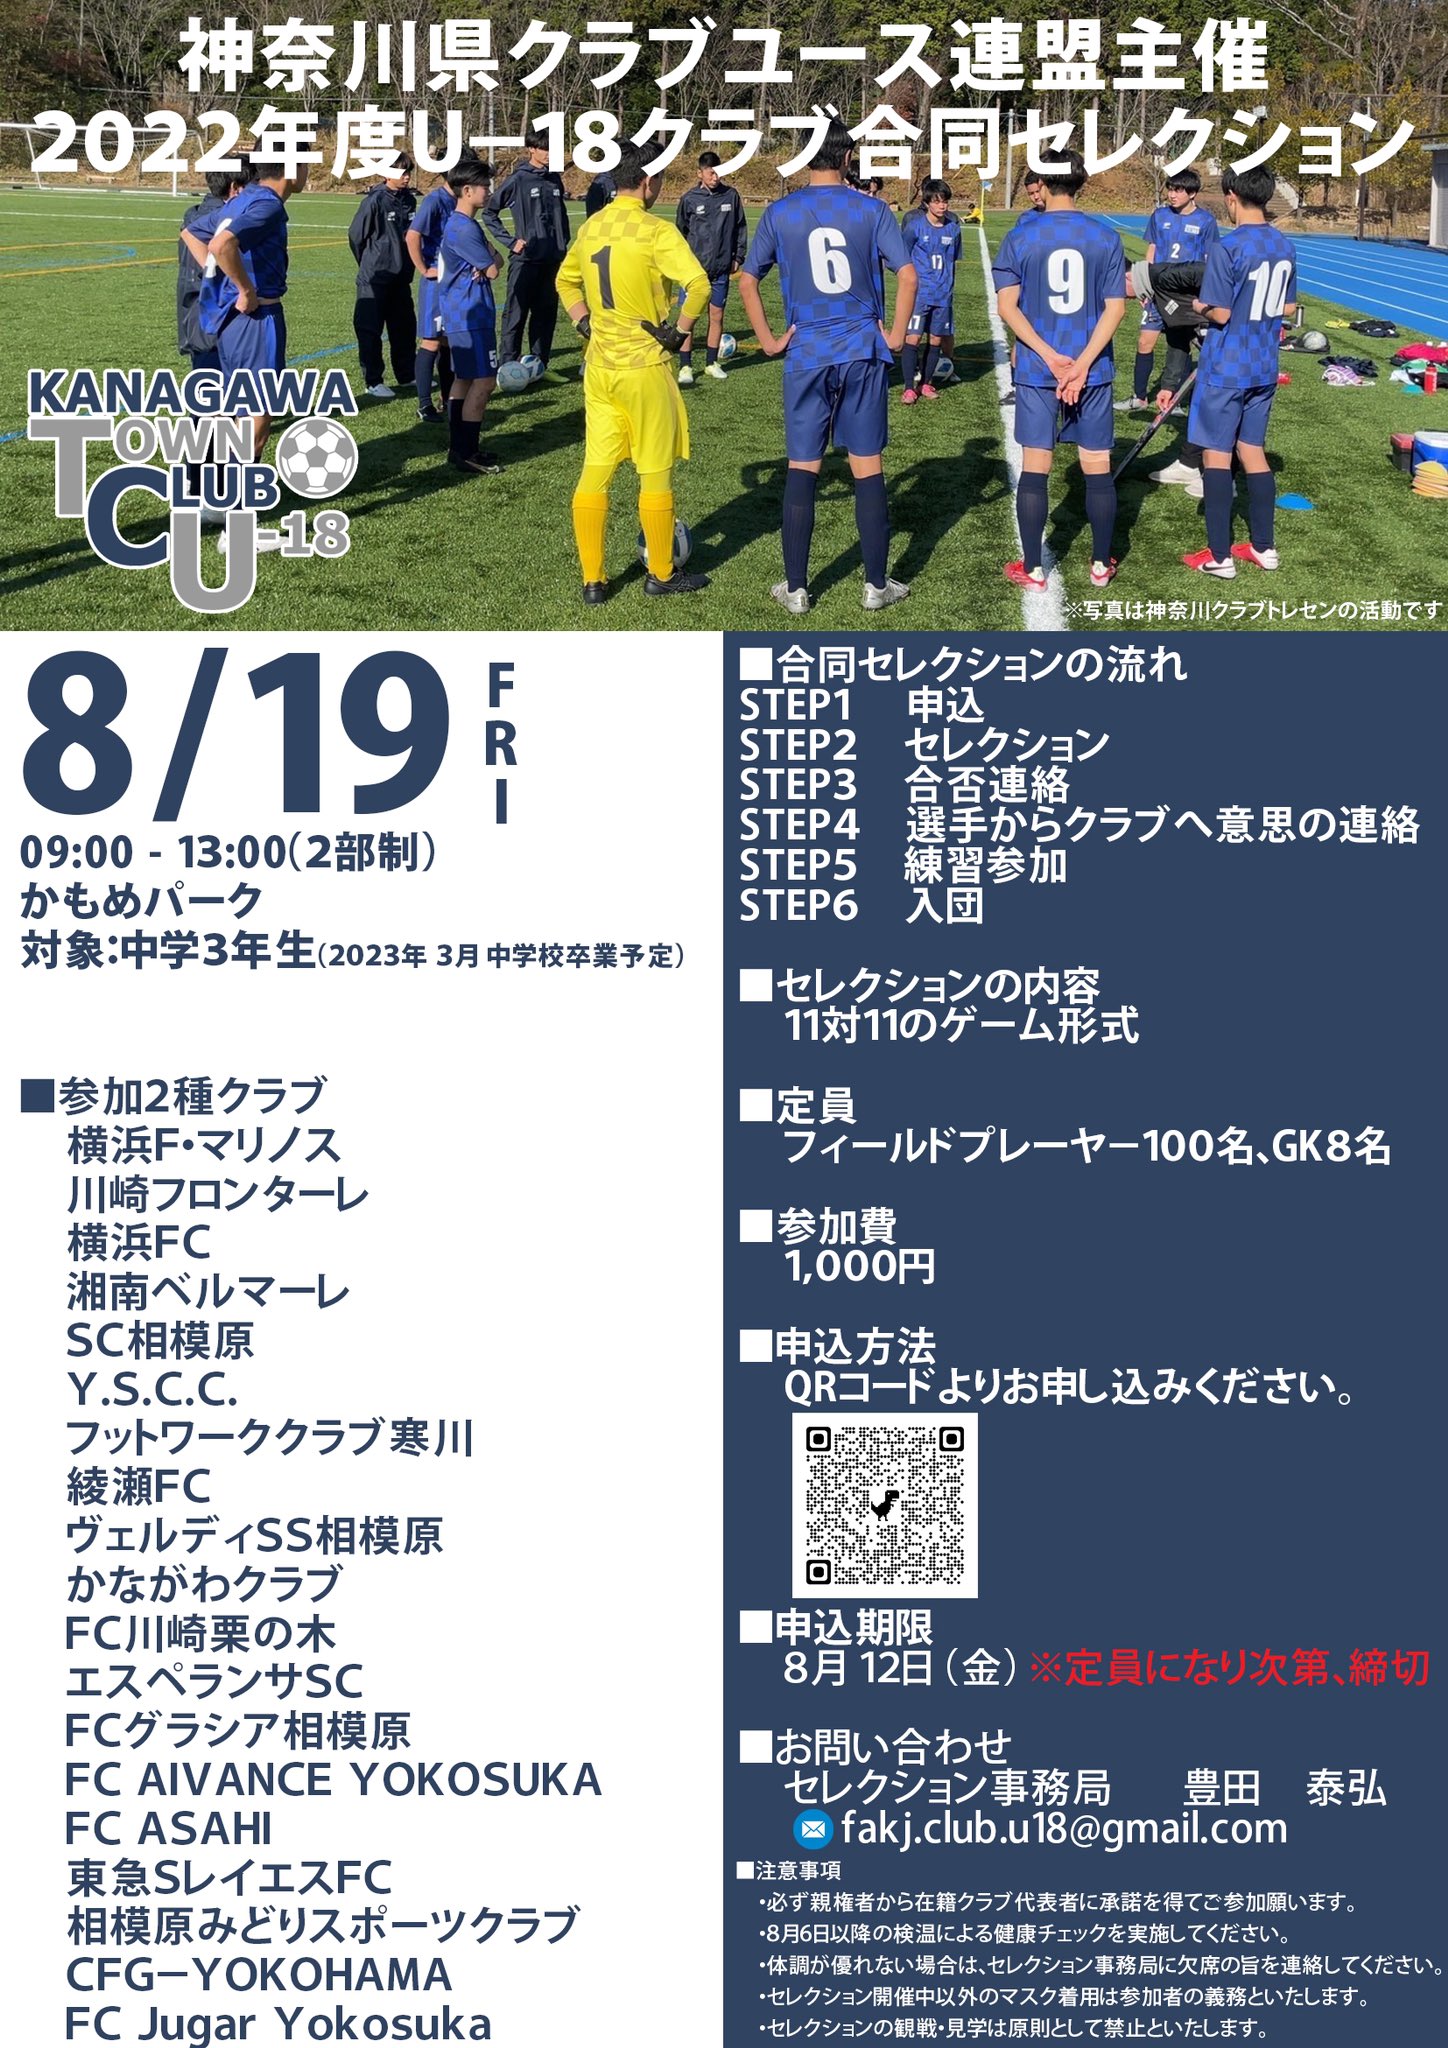 神奈川県サッカー協会 第2種クラブ U 18 公式 Fakj Club U18 Twitter